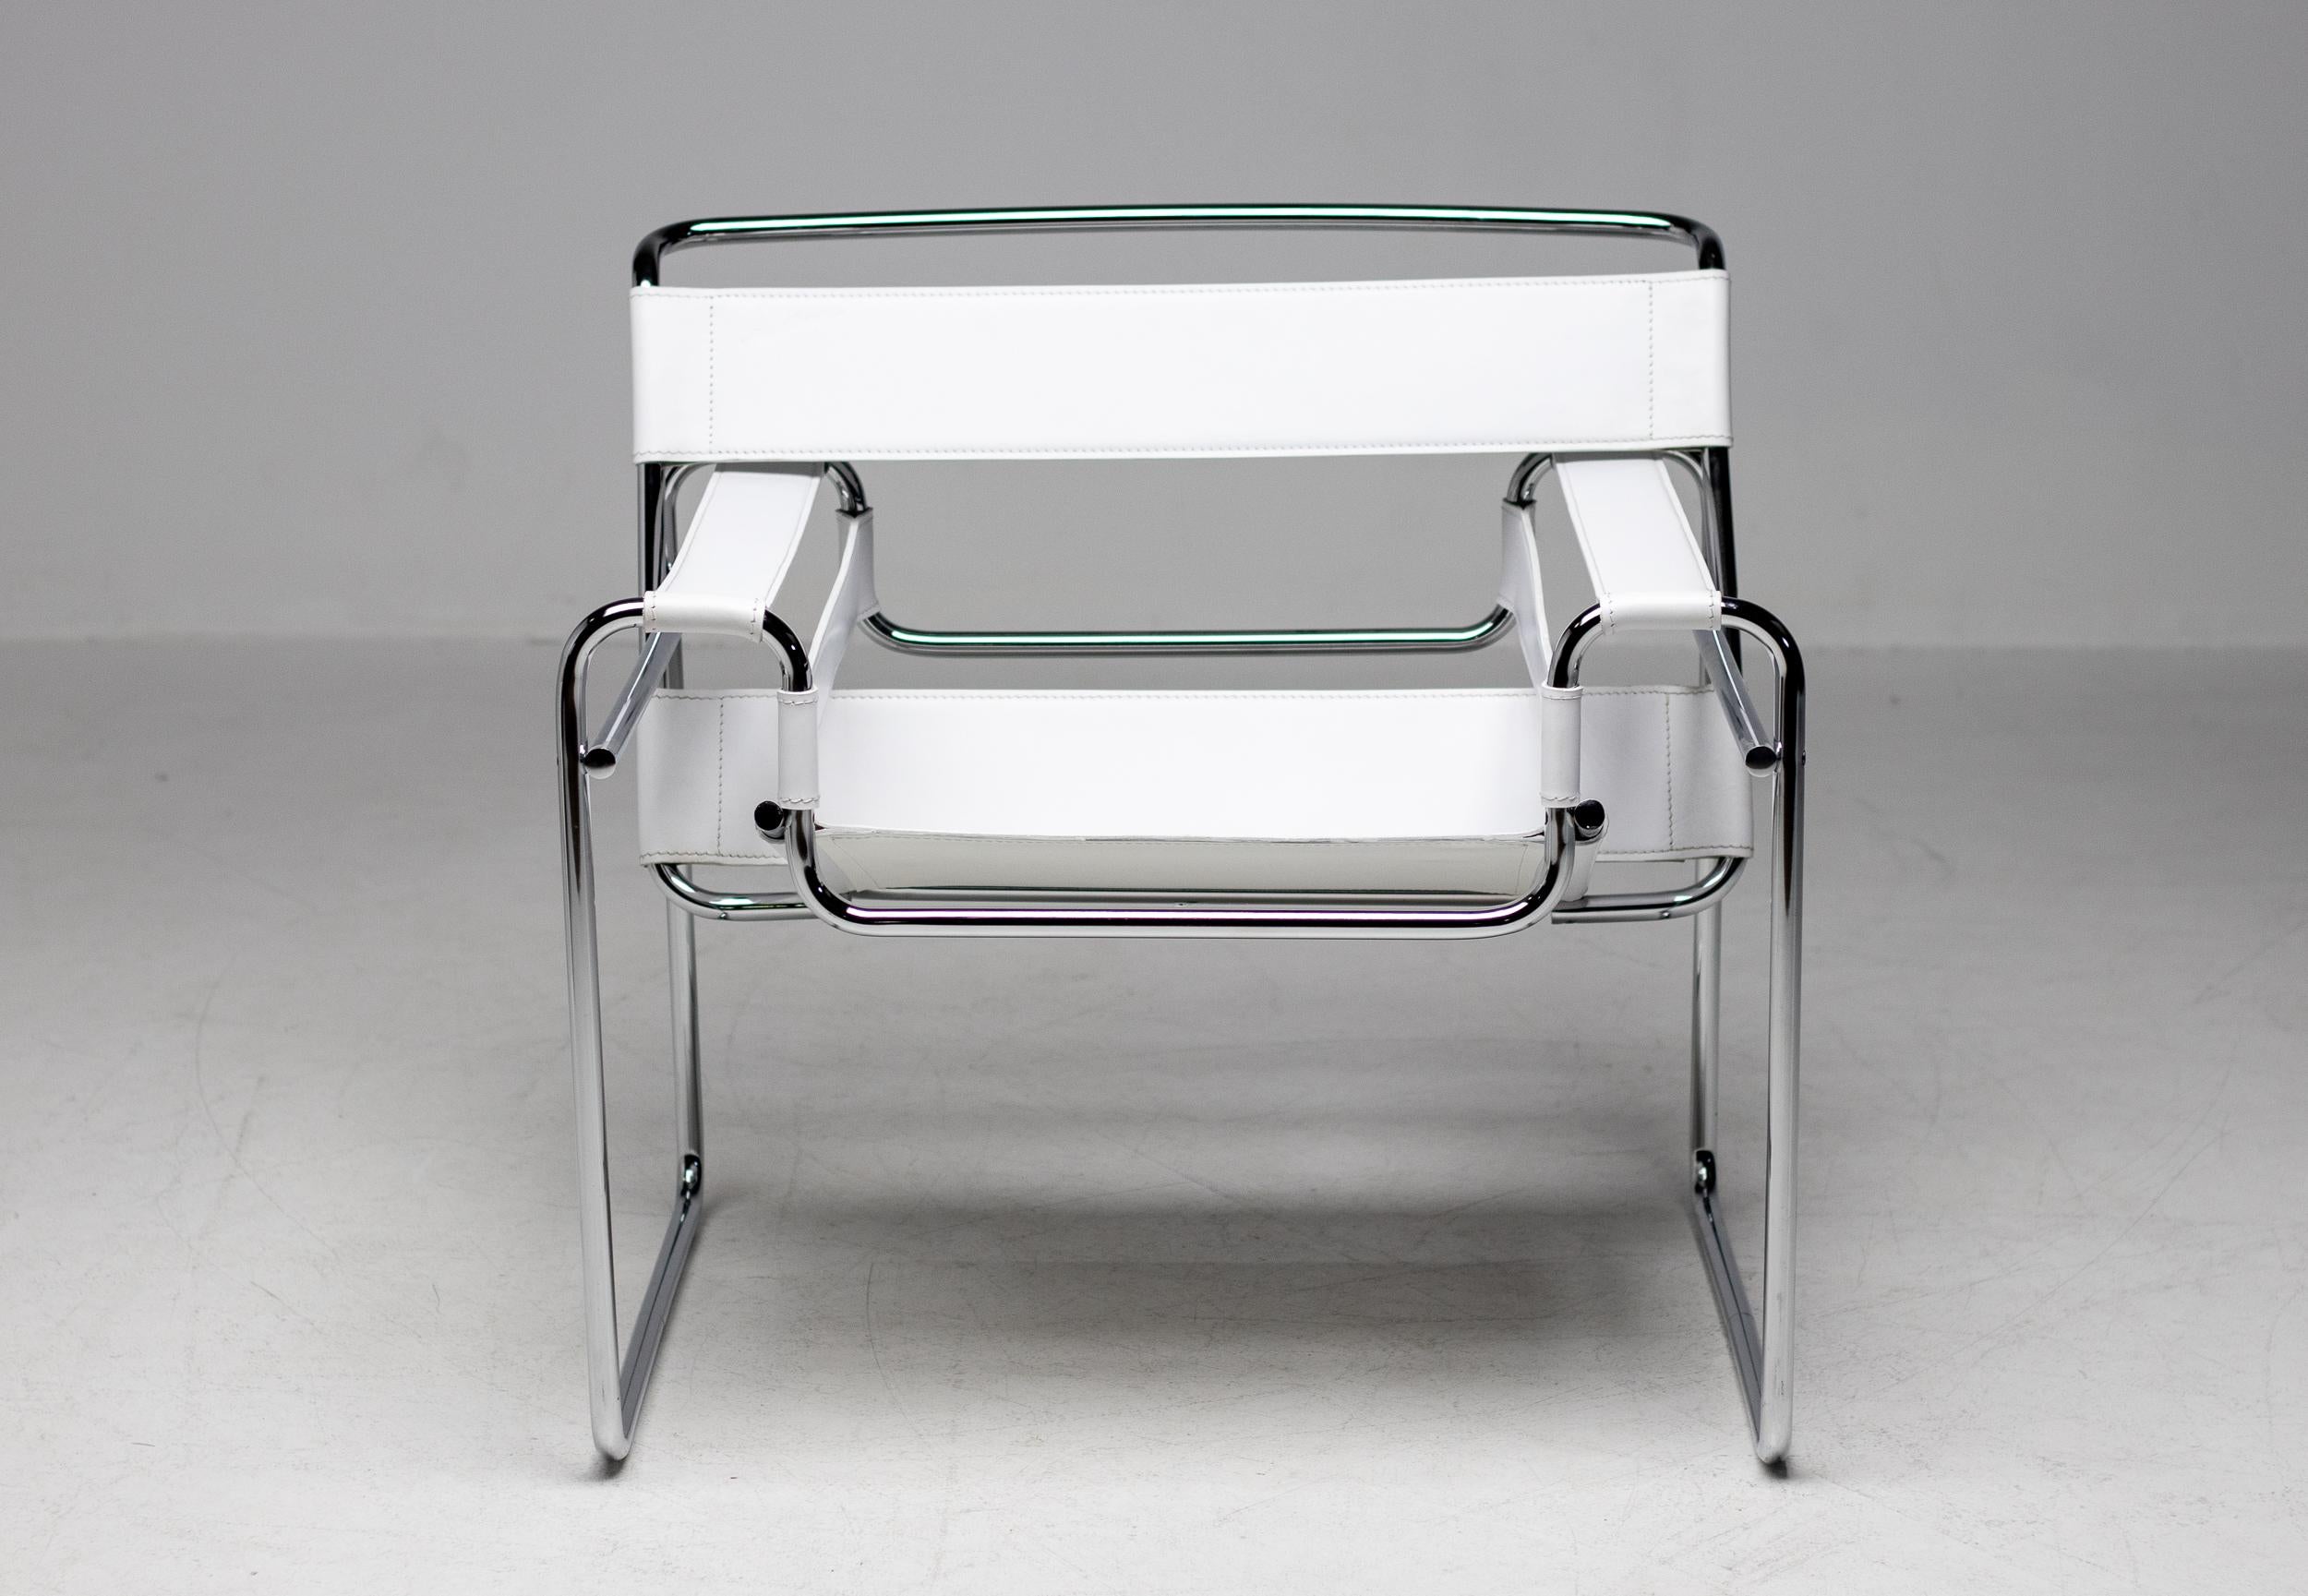 Chaise blanche Wassily conçue par Marcel Breuer, vers 1925. 
Fabriqué vers 1960 par Gavina en Italie. 
Fabriqué en cuir blanc avec un cadre en acier tubulaire chromé. 
Estampillé dans le cuir, magnifique vintage tout état d'origine.